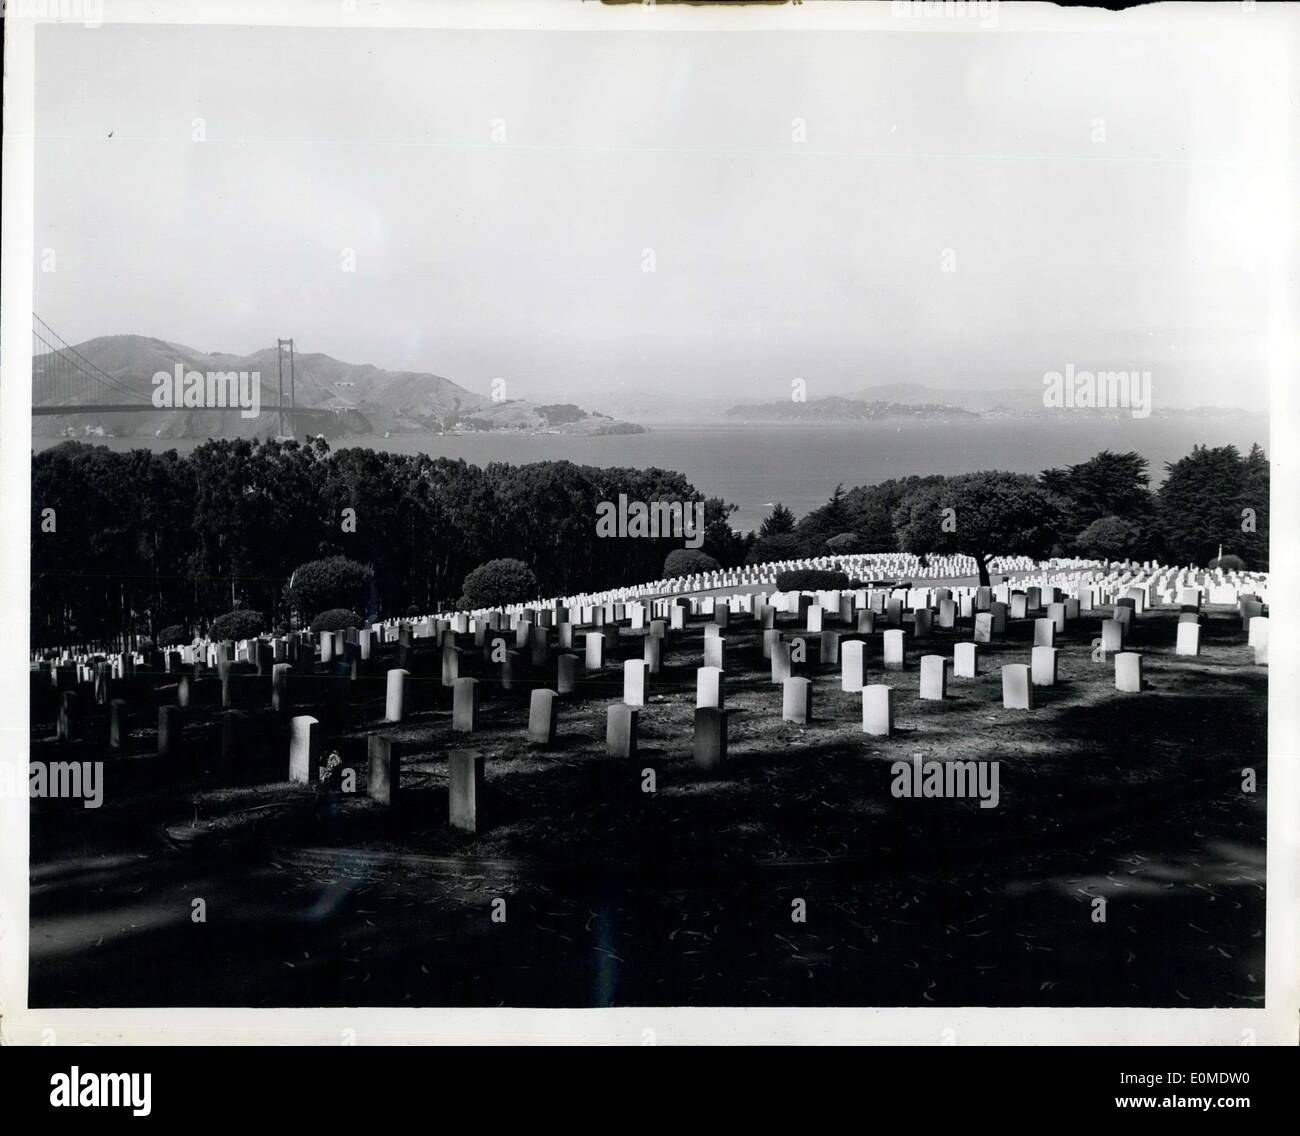 Septembre 21, 1954 - L'Amérique rend hommage à ses morts à la guerre : l'un des cimetières militaires nationaux d'Amérique est situé à at the Presidio de San Francisco, Californie donnant sur la baie de San Francisco et le Golden Gate Bridge. Banque D'Images